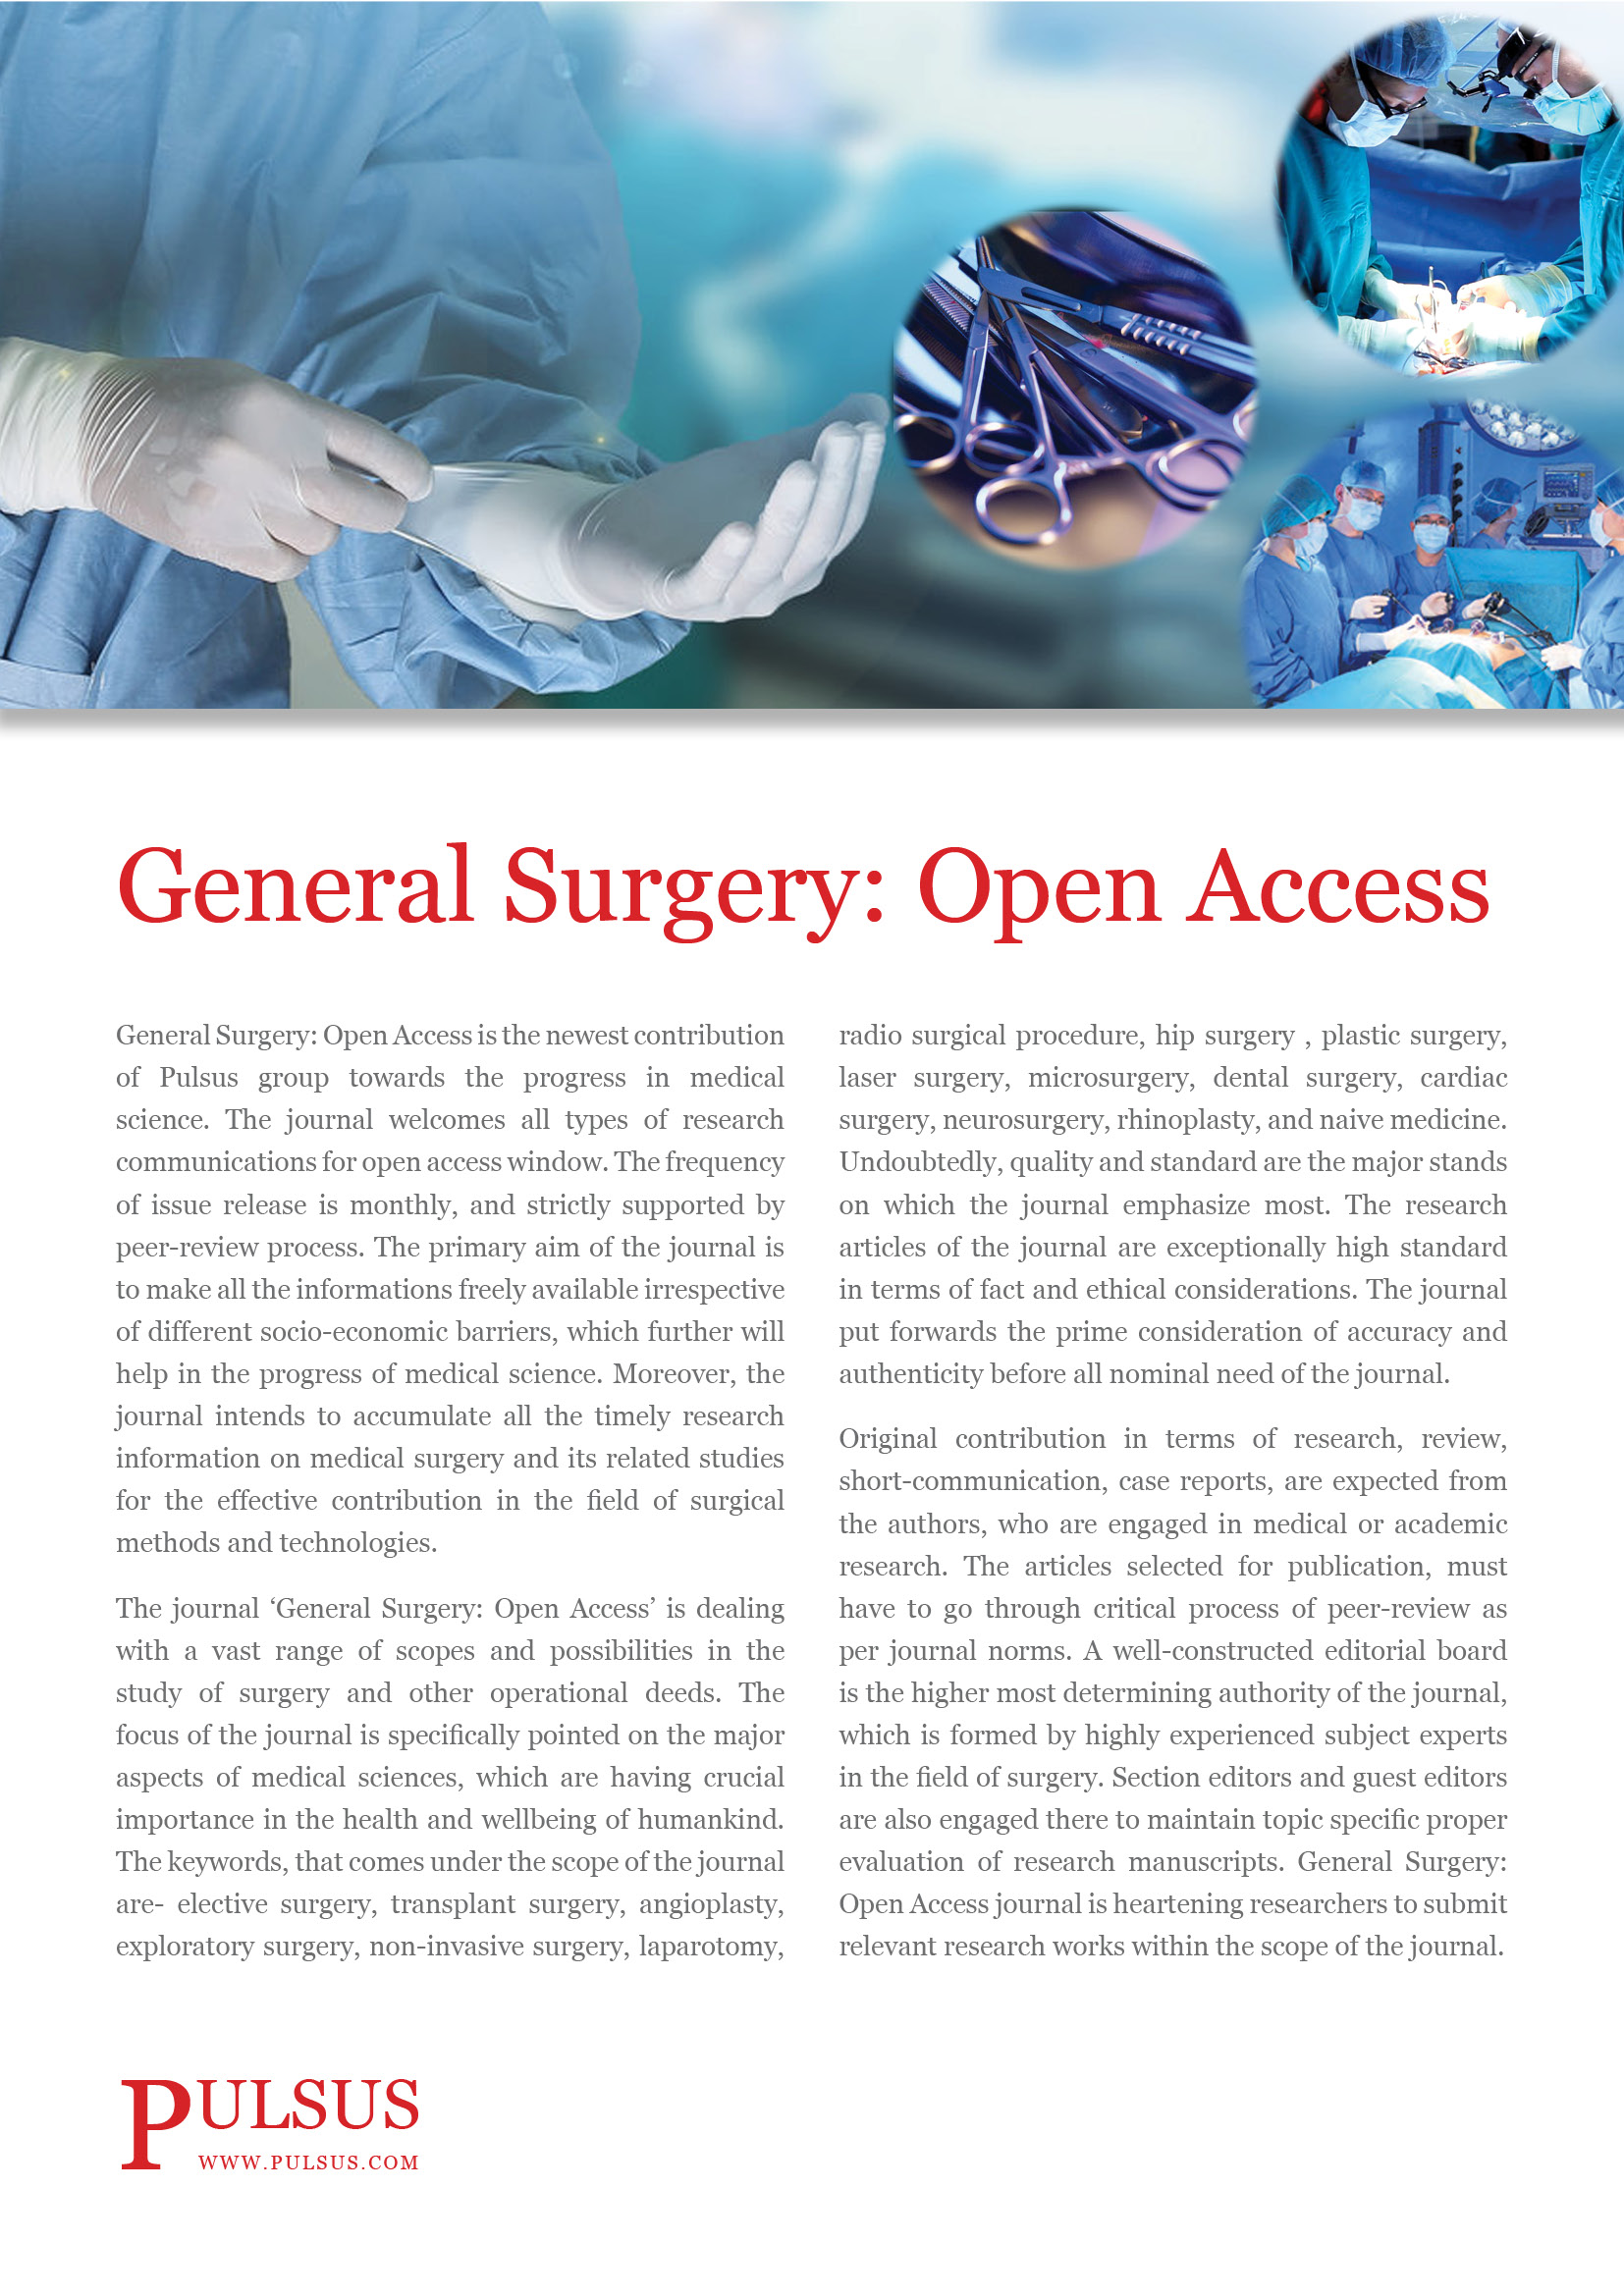 Cirugía General: Acceso Abierto